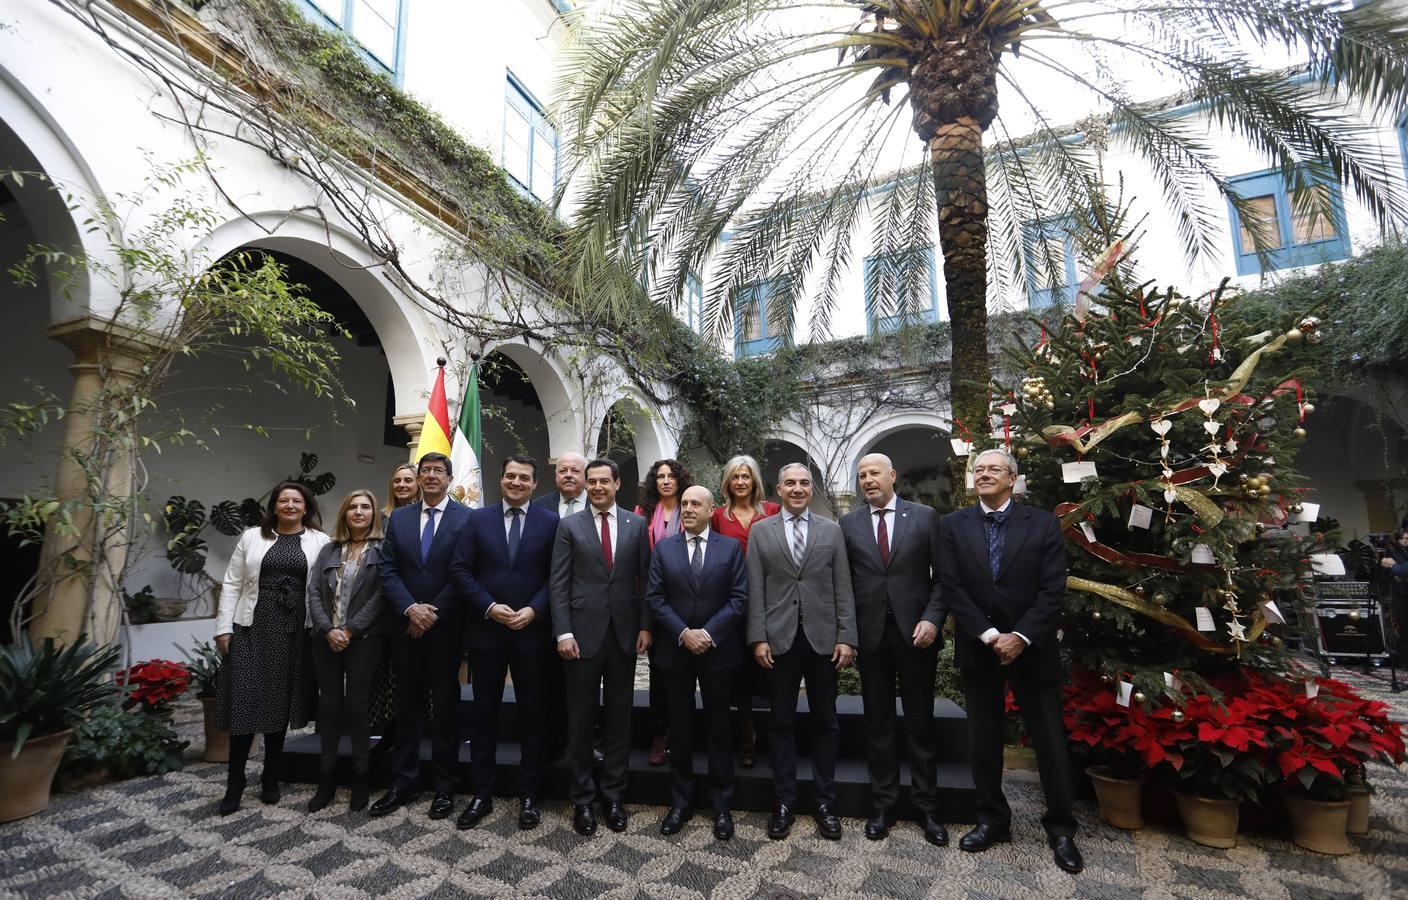 La reunión del Consejo de Gobierno de la Junta en Córdoba, en imágenes